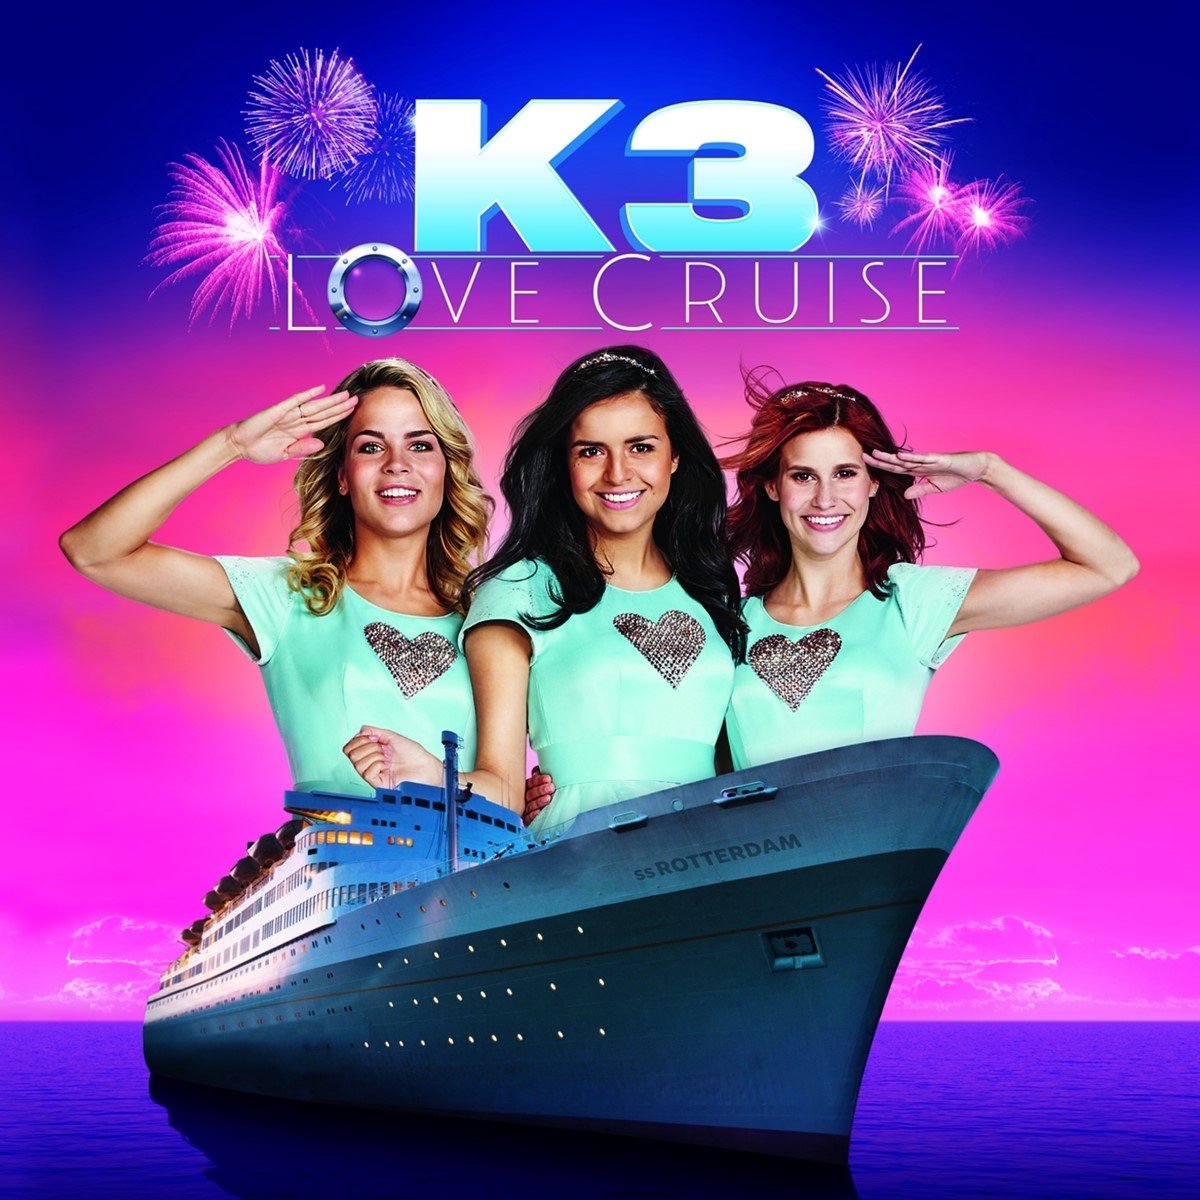 Love cruise - K3